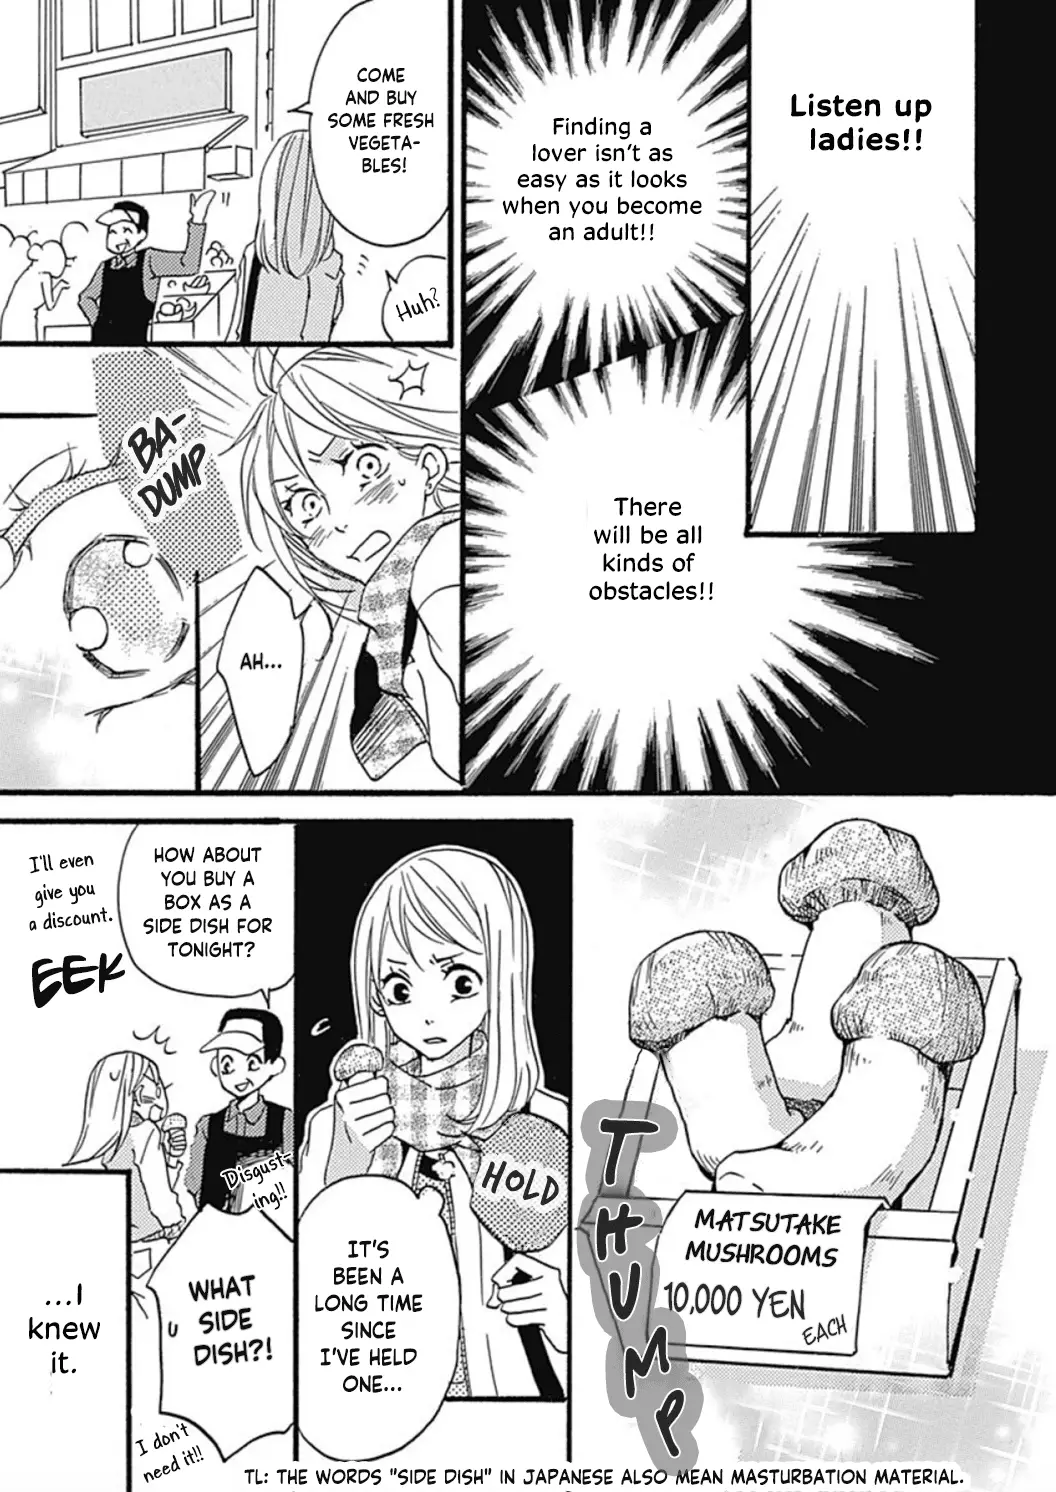 Tappuri No Kiss Kara Hajimete - 1 page 10-7ab61458